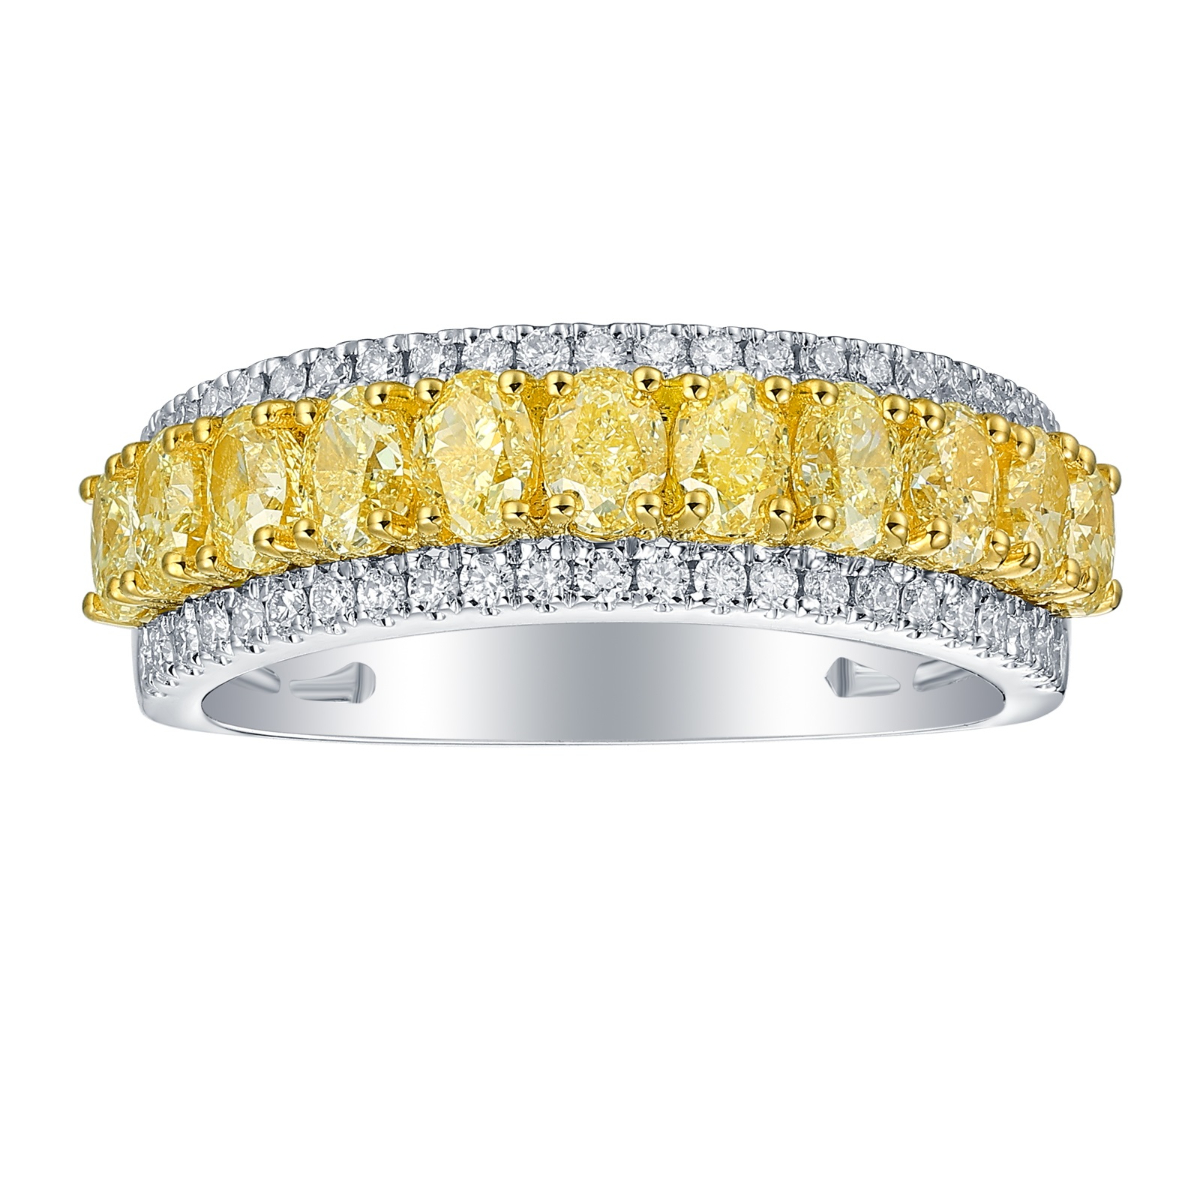 R37303NYL – 18K White Gold Diamond Ring, 2.15 TCW